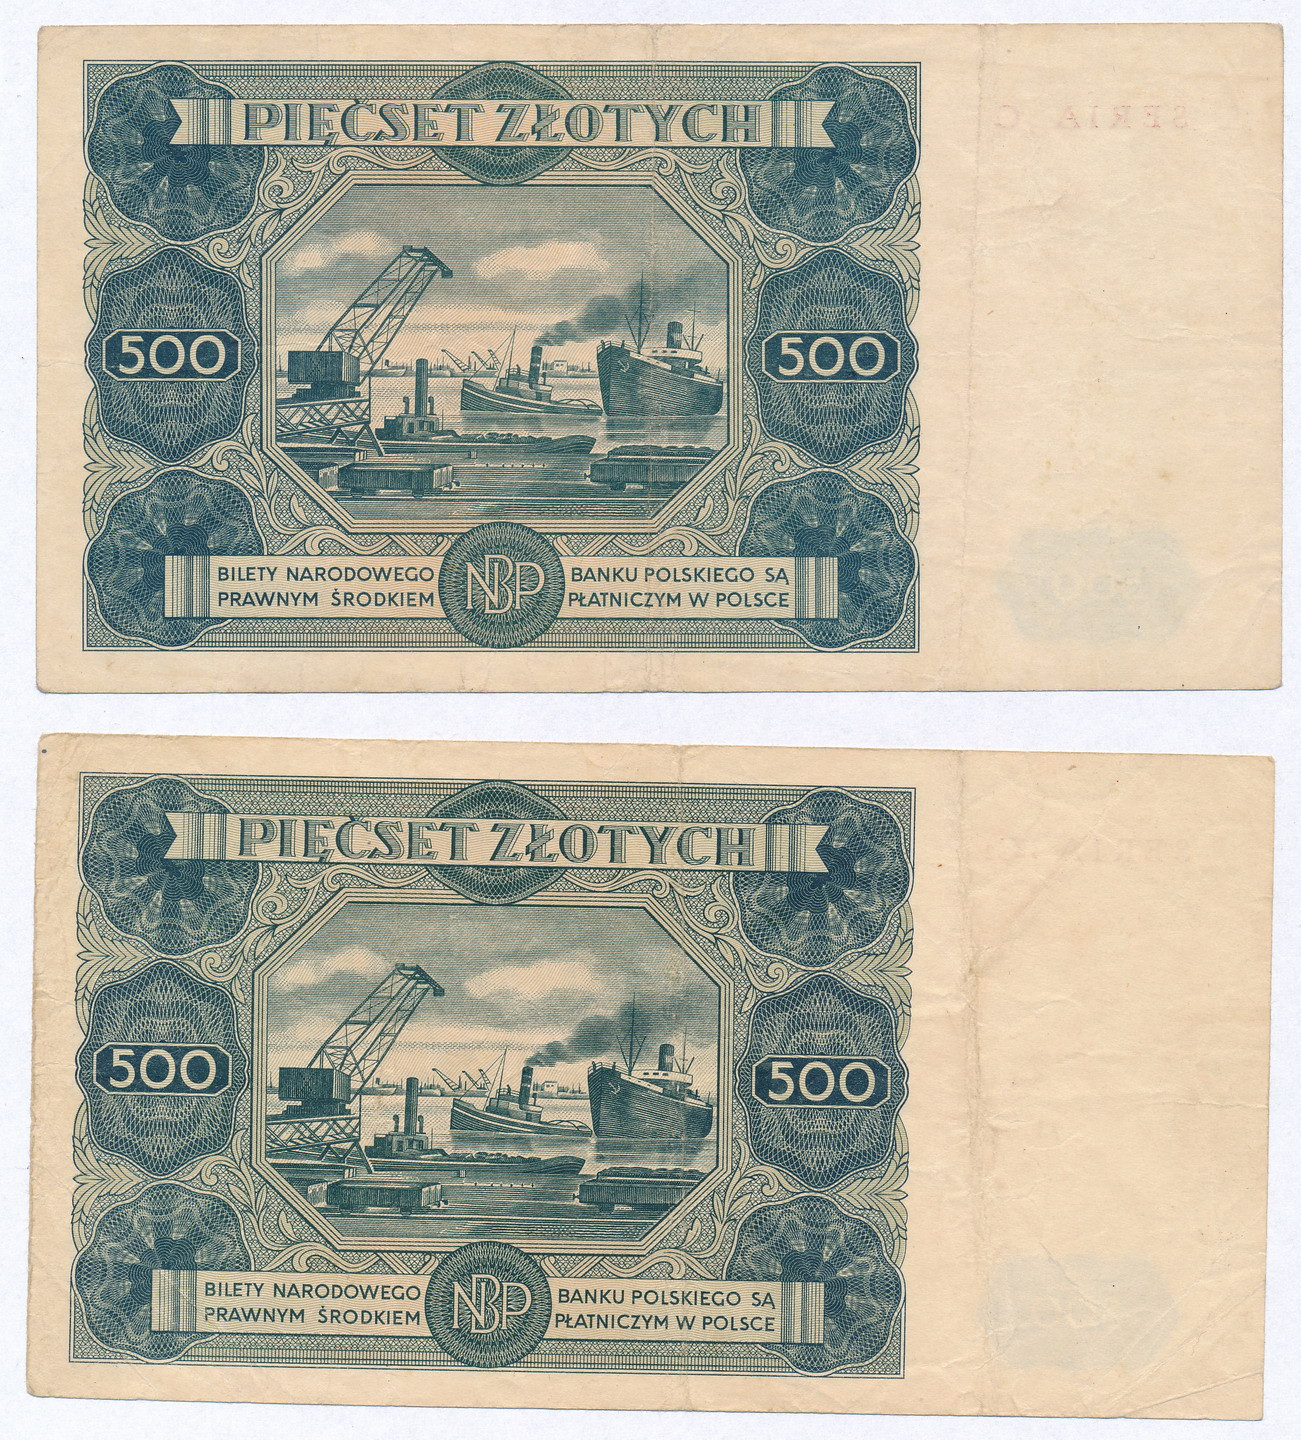 500 złotych 1947 seria C i C2, zestaw 2 banknotów - RZADKIE